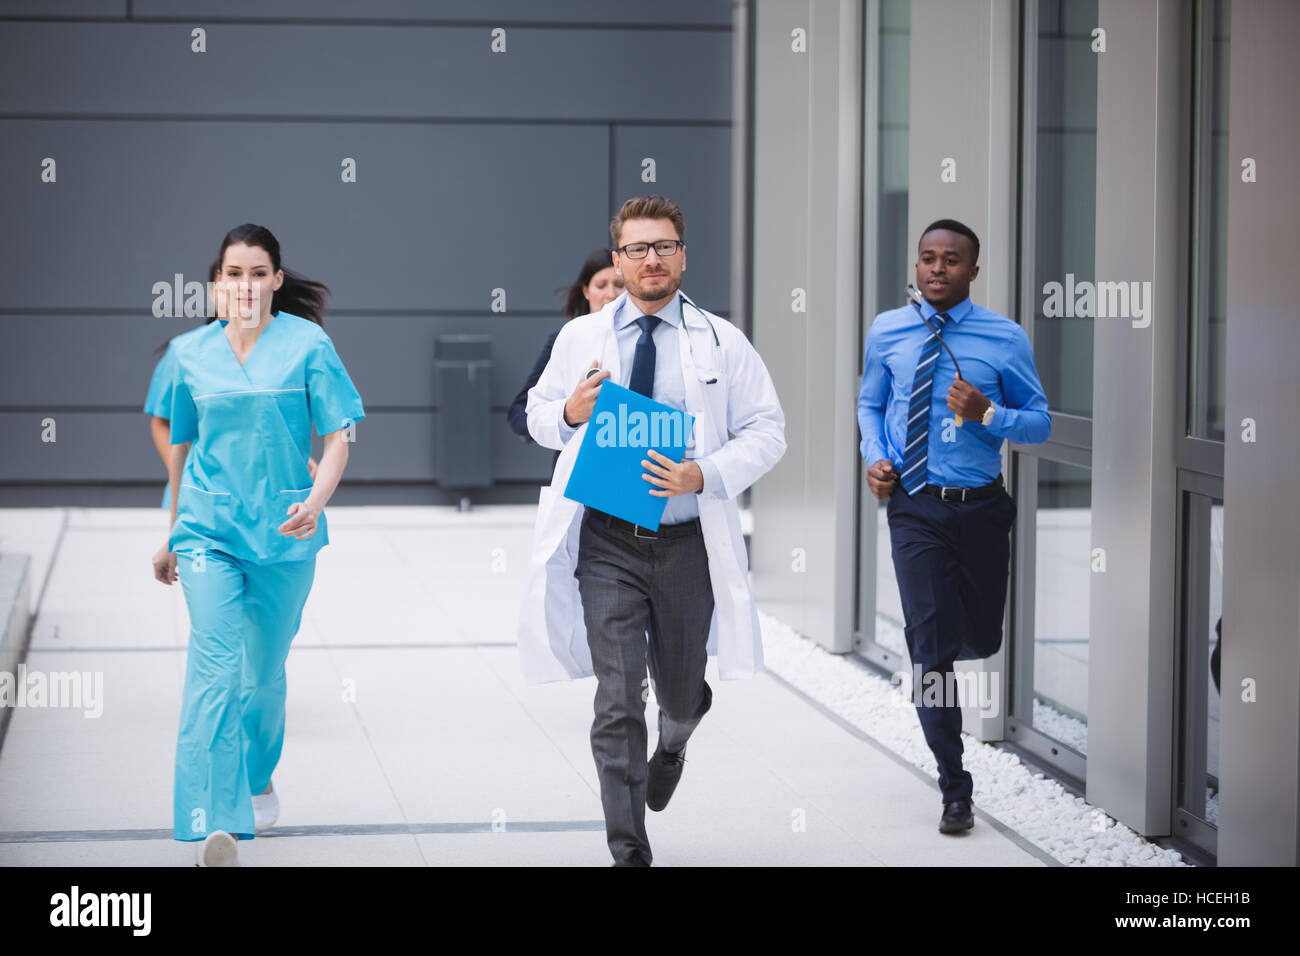 Los médicos y las enfermeras corriendo para emergencias Foto de stock